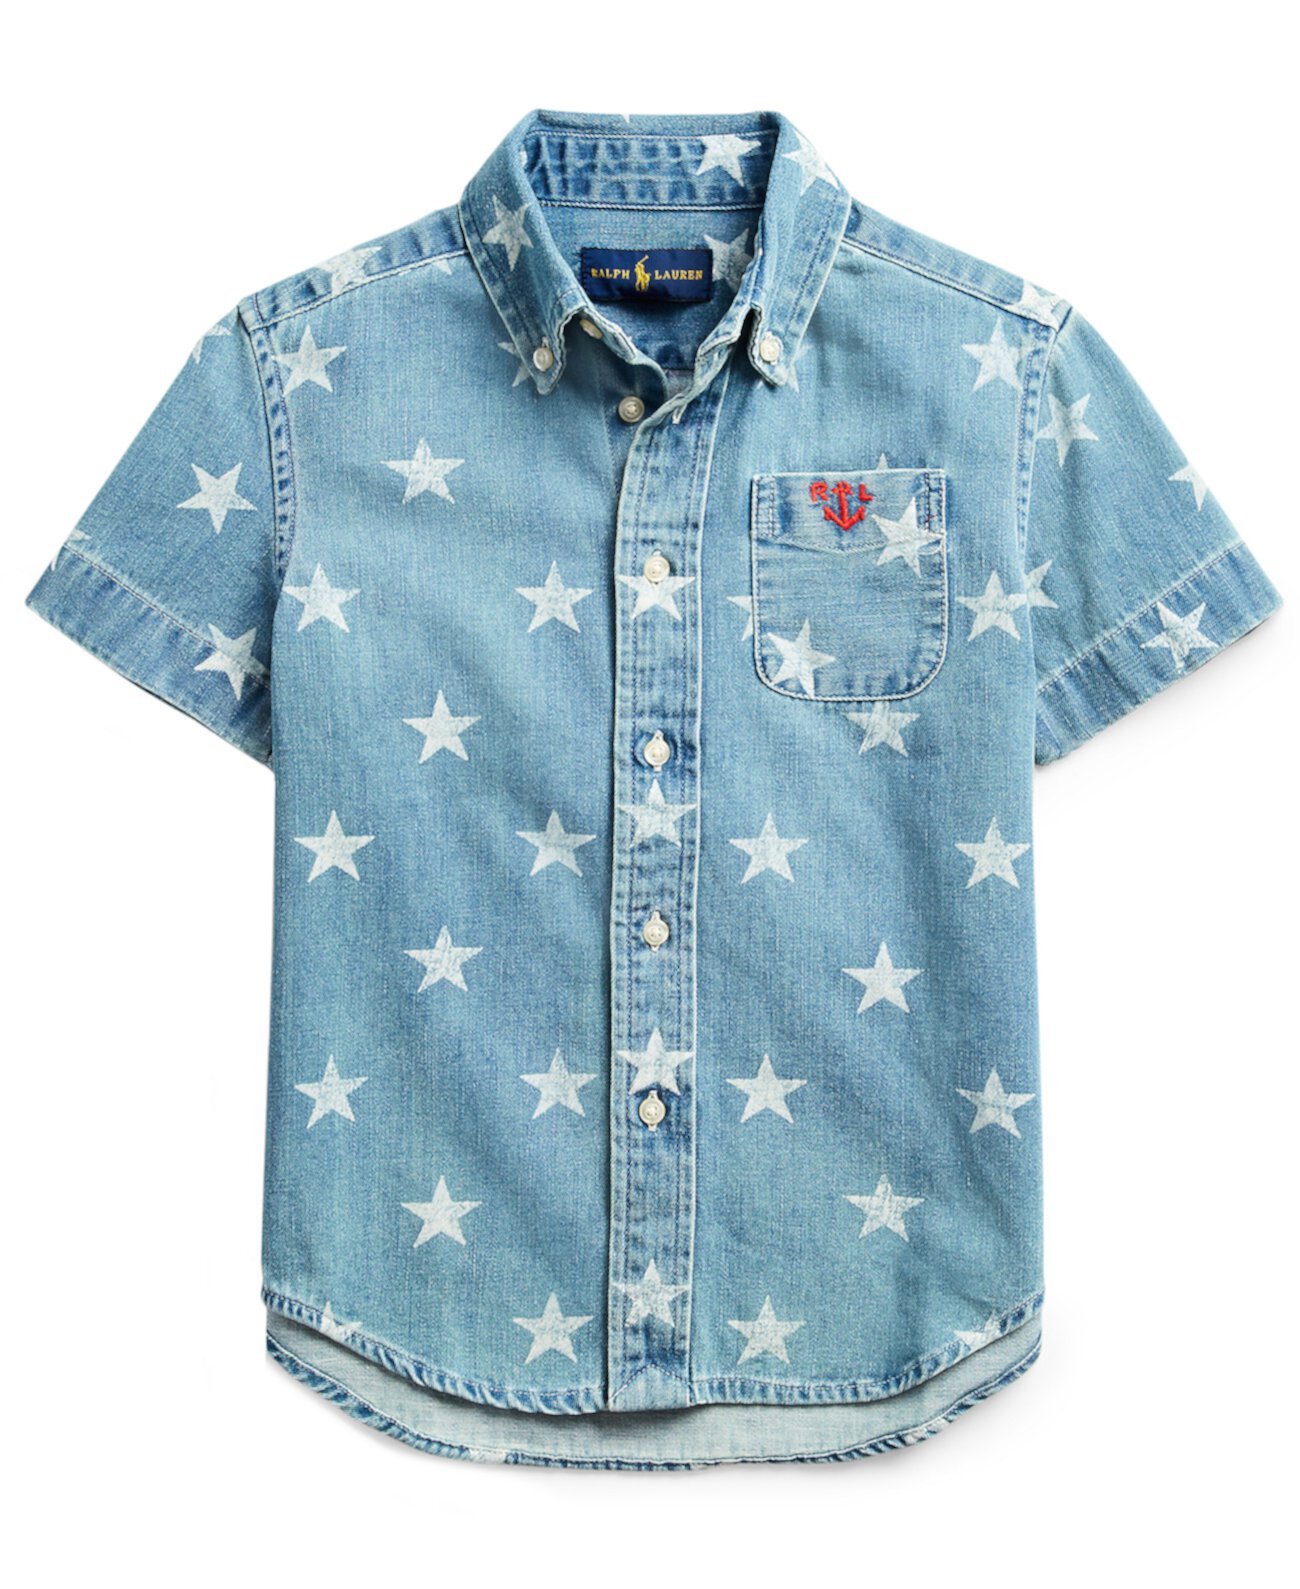 Джинсовая рубашка с принтом звезд Little Boys Ralph Lauren